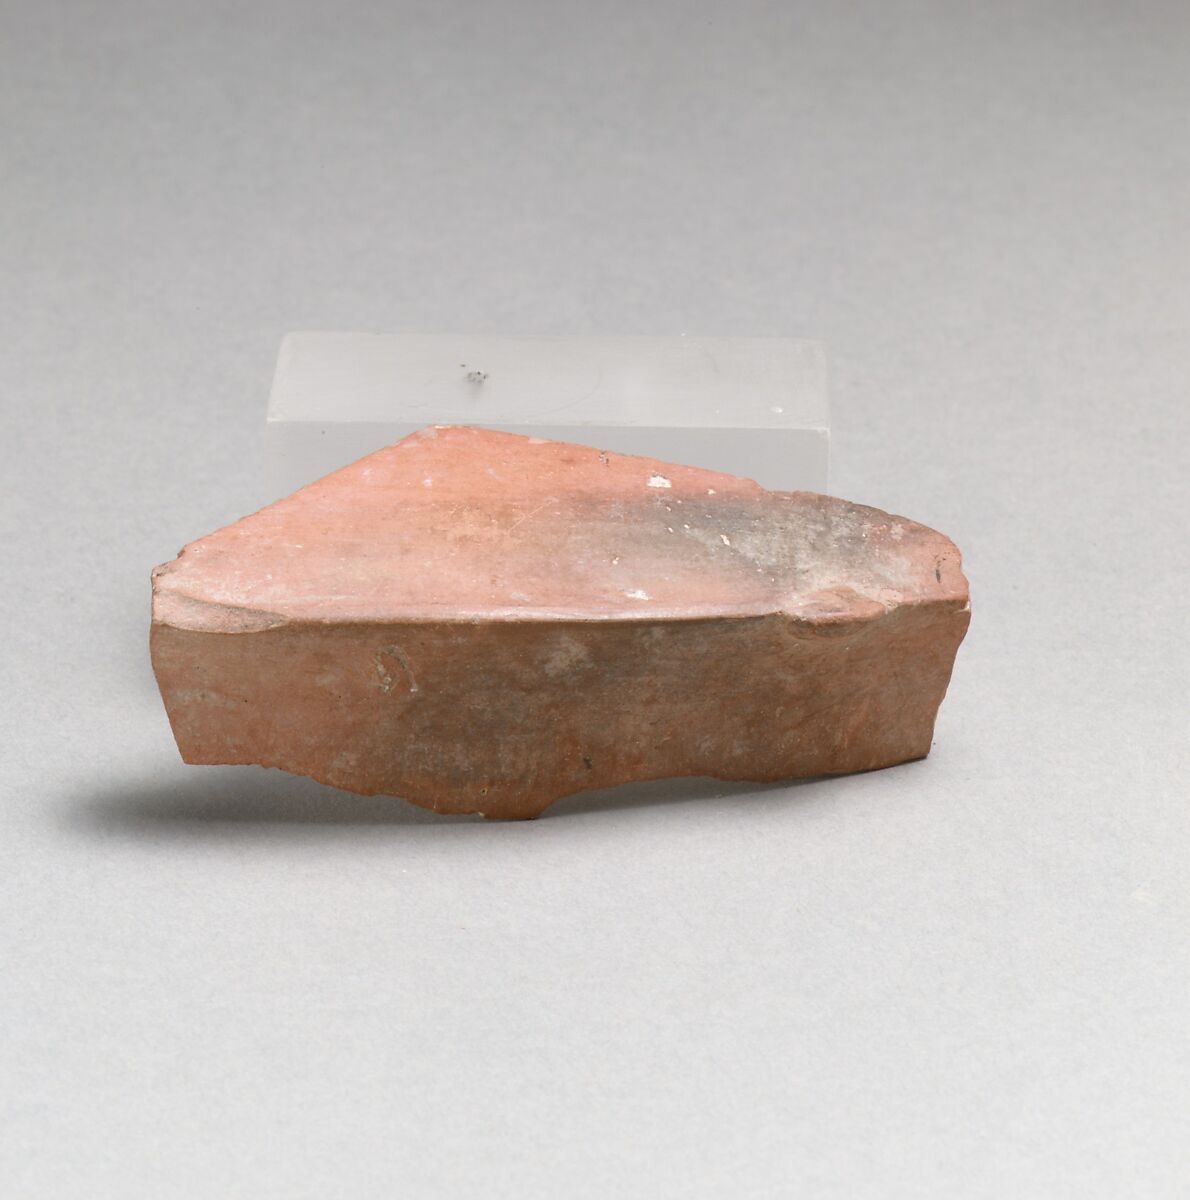 Terracotta vase fragment, Terracotta, Sesklo culture 